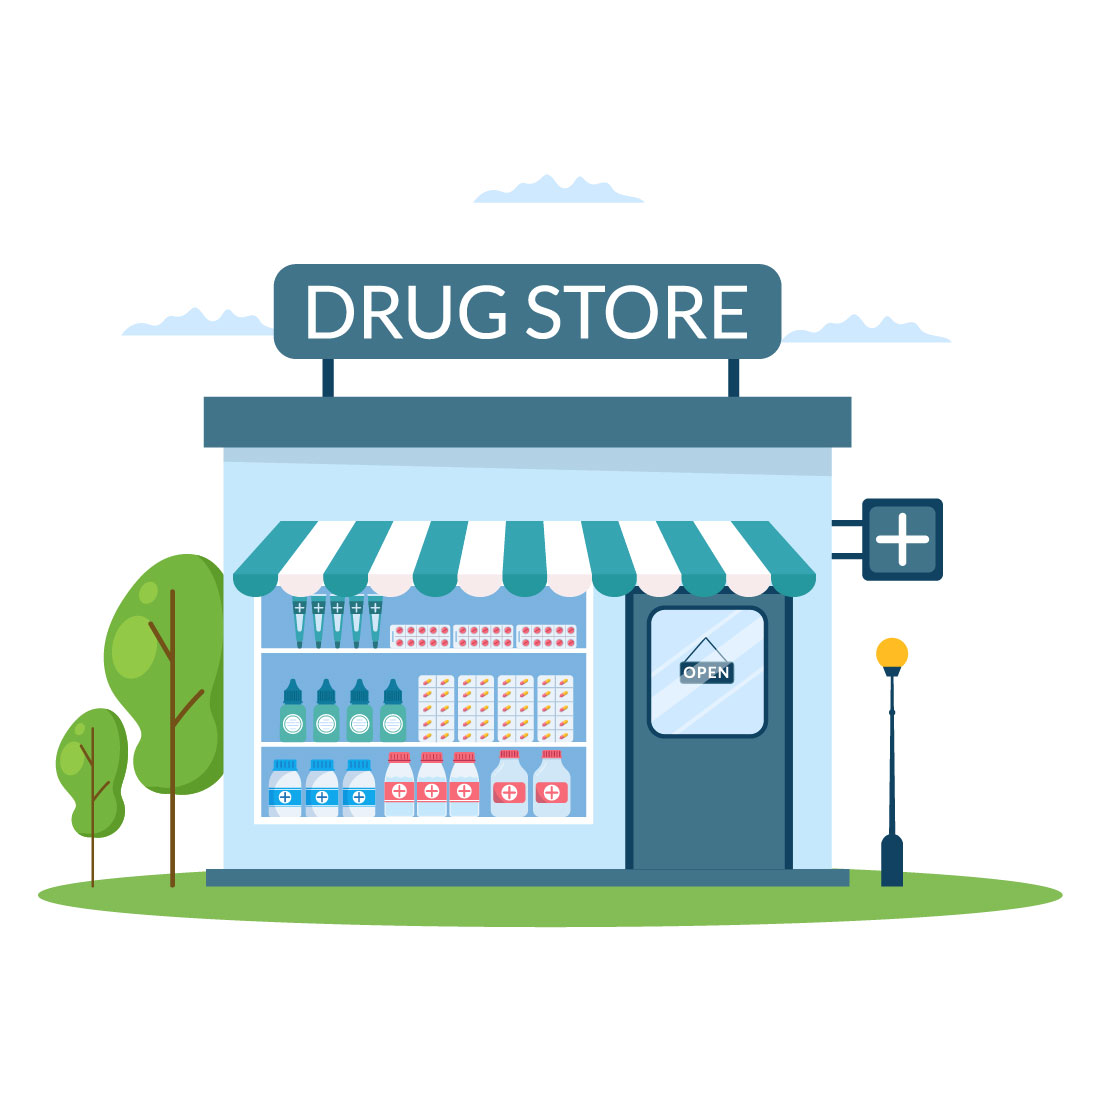 Drug Store Medicine Illustration cover image.